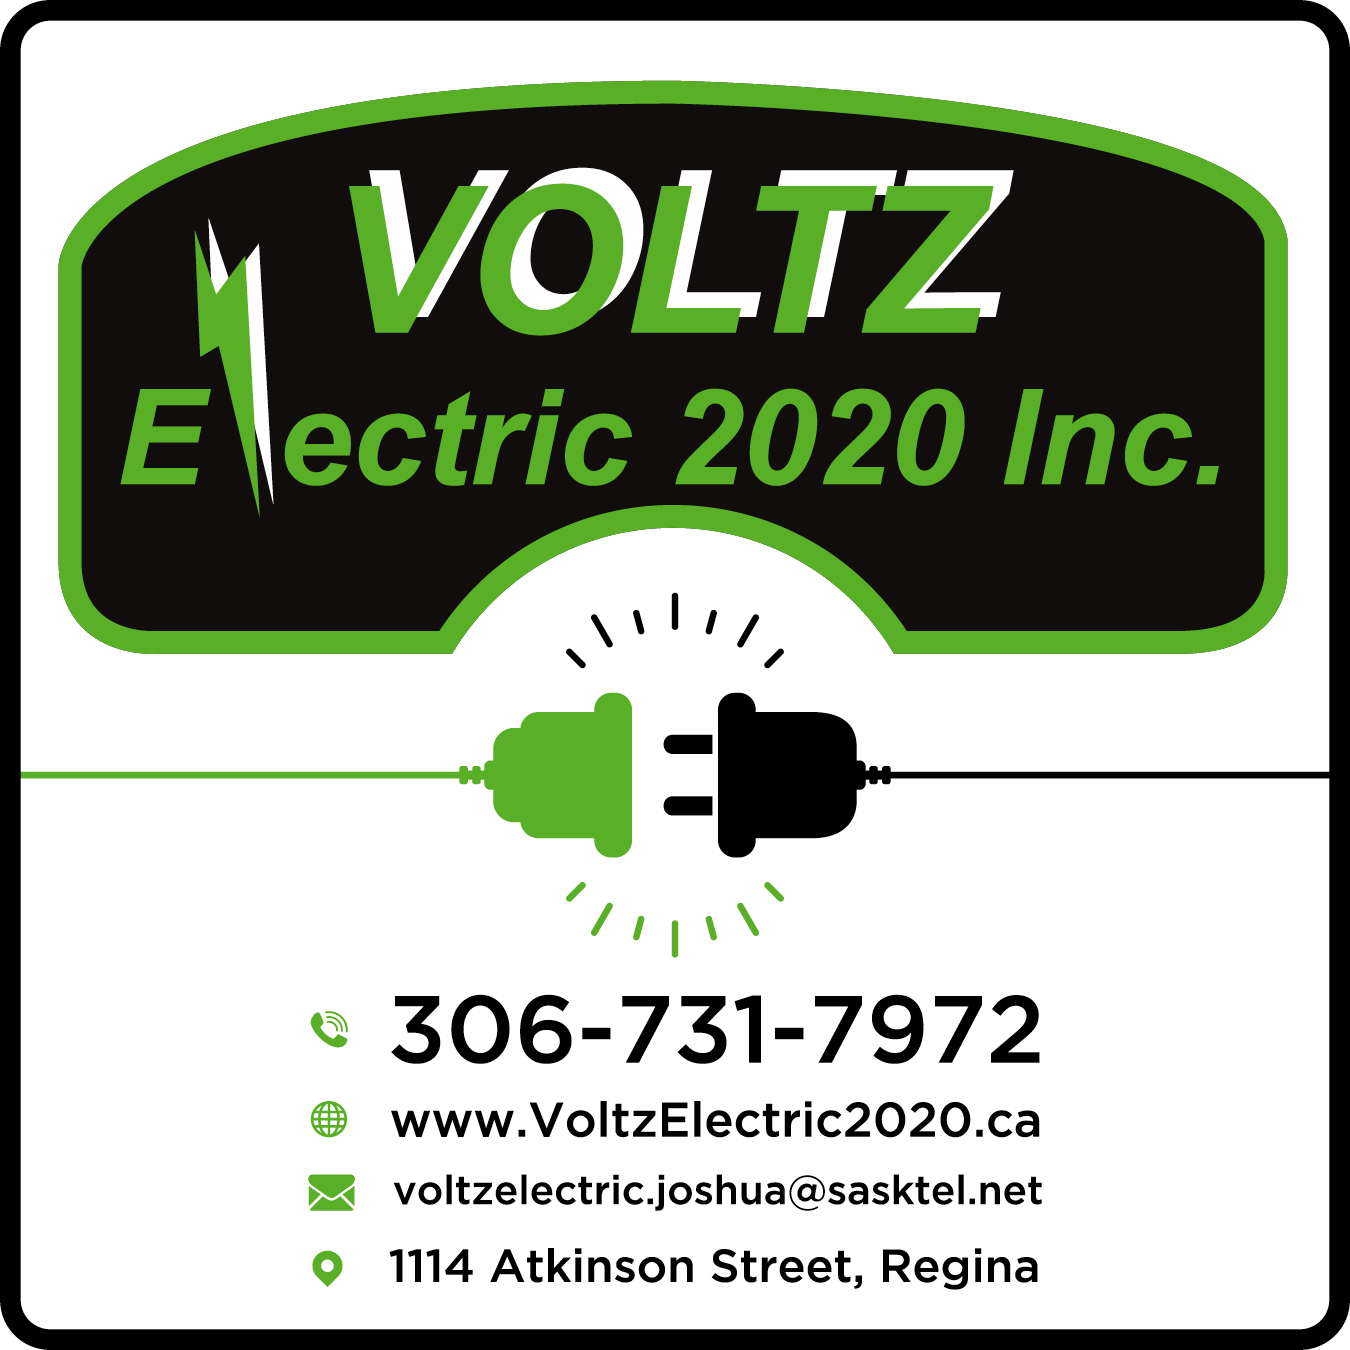 Voltz Electric 2020 Inc.